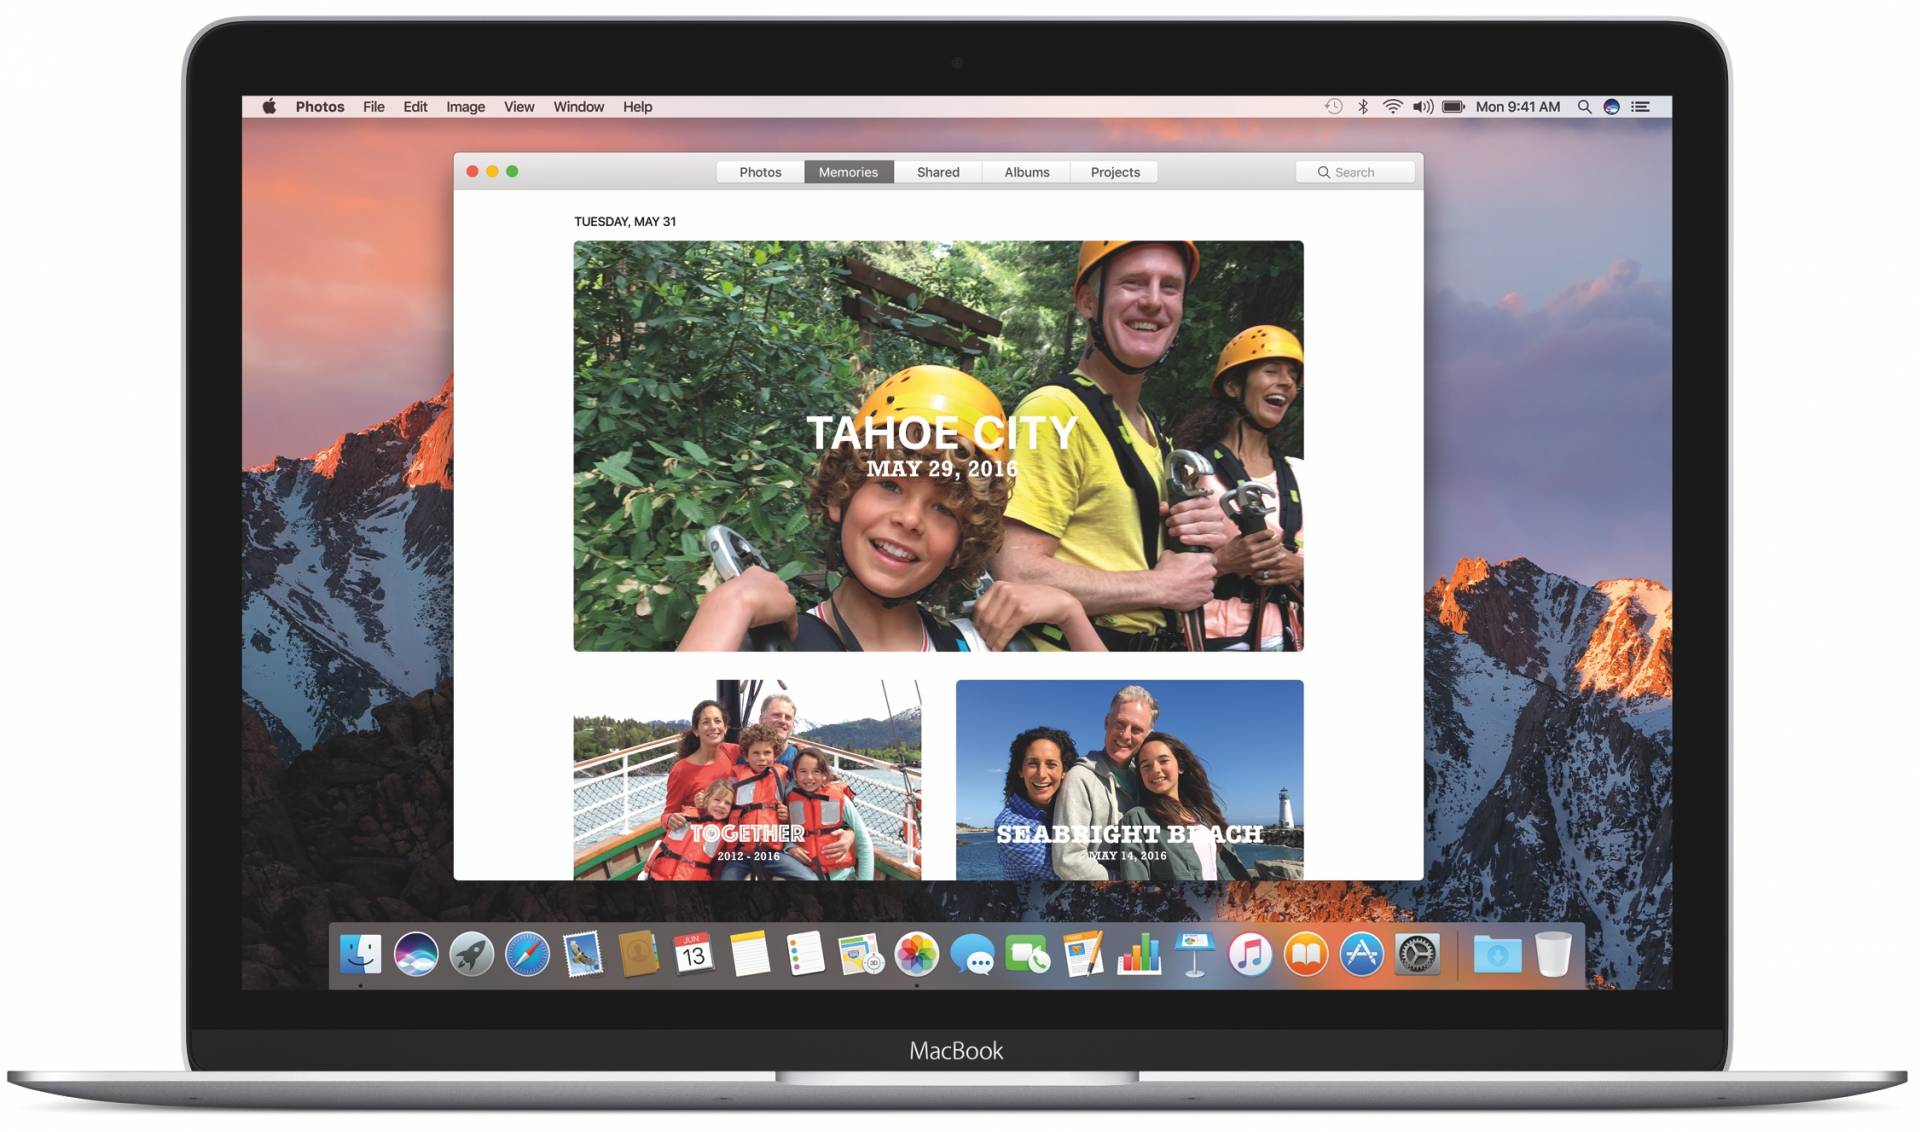 macOS-Sierra-desktop-Photos-Memories-image-001